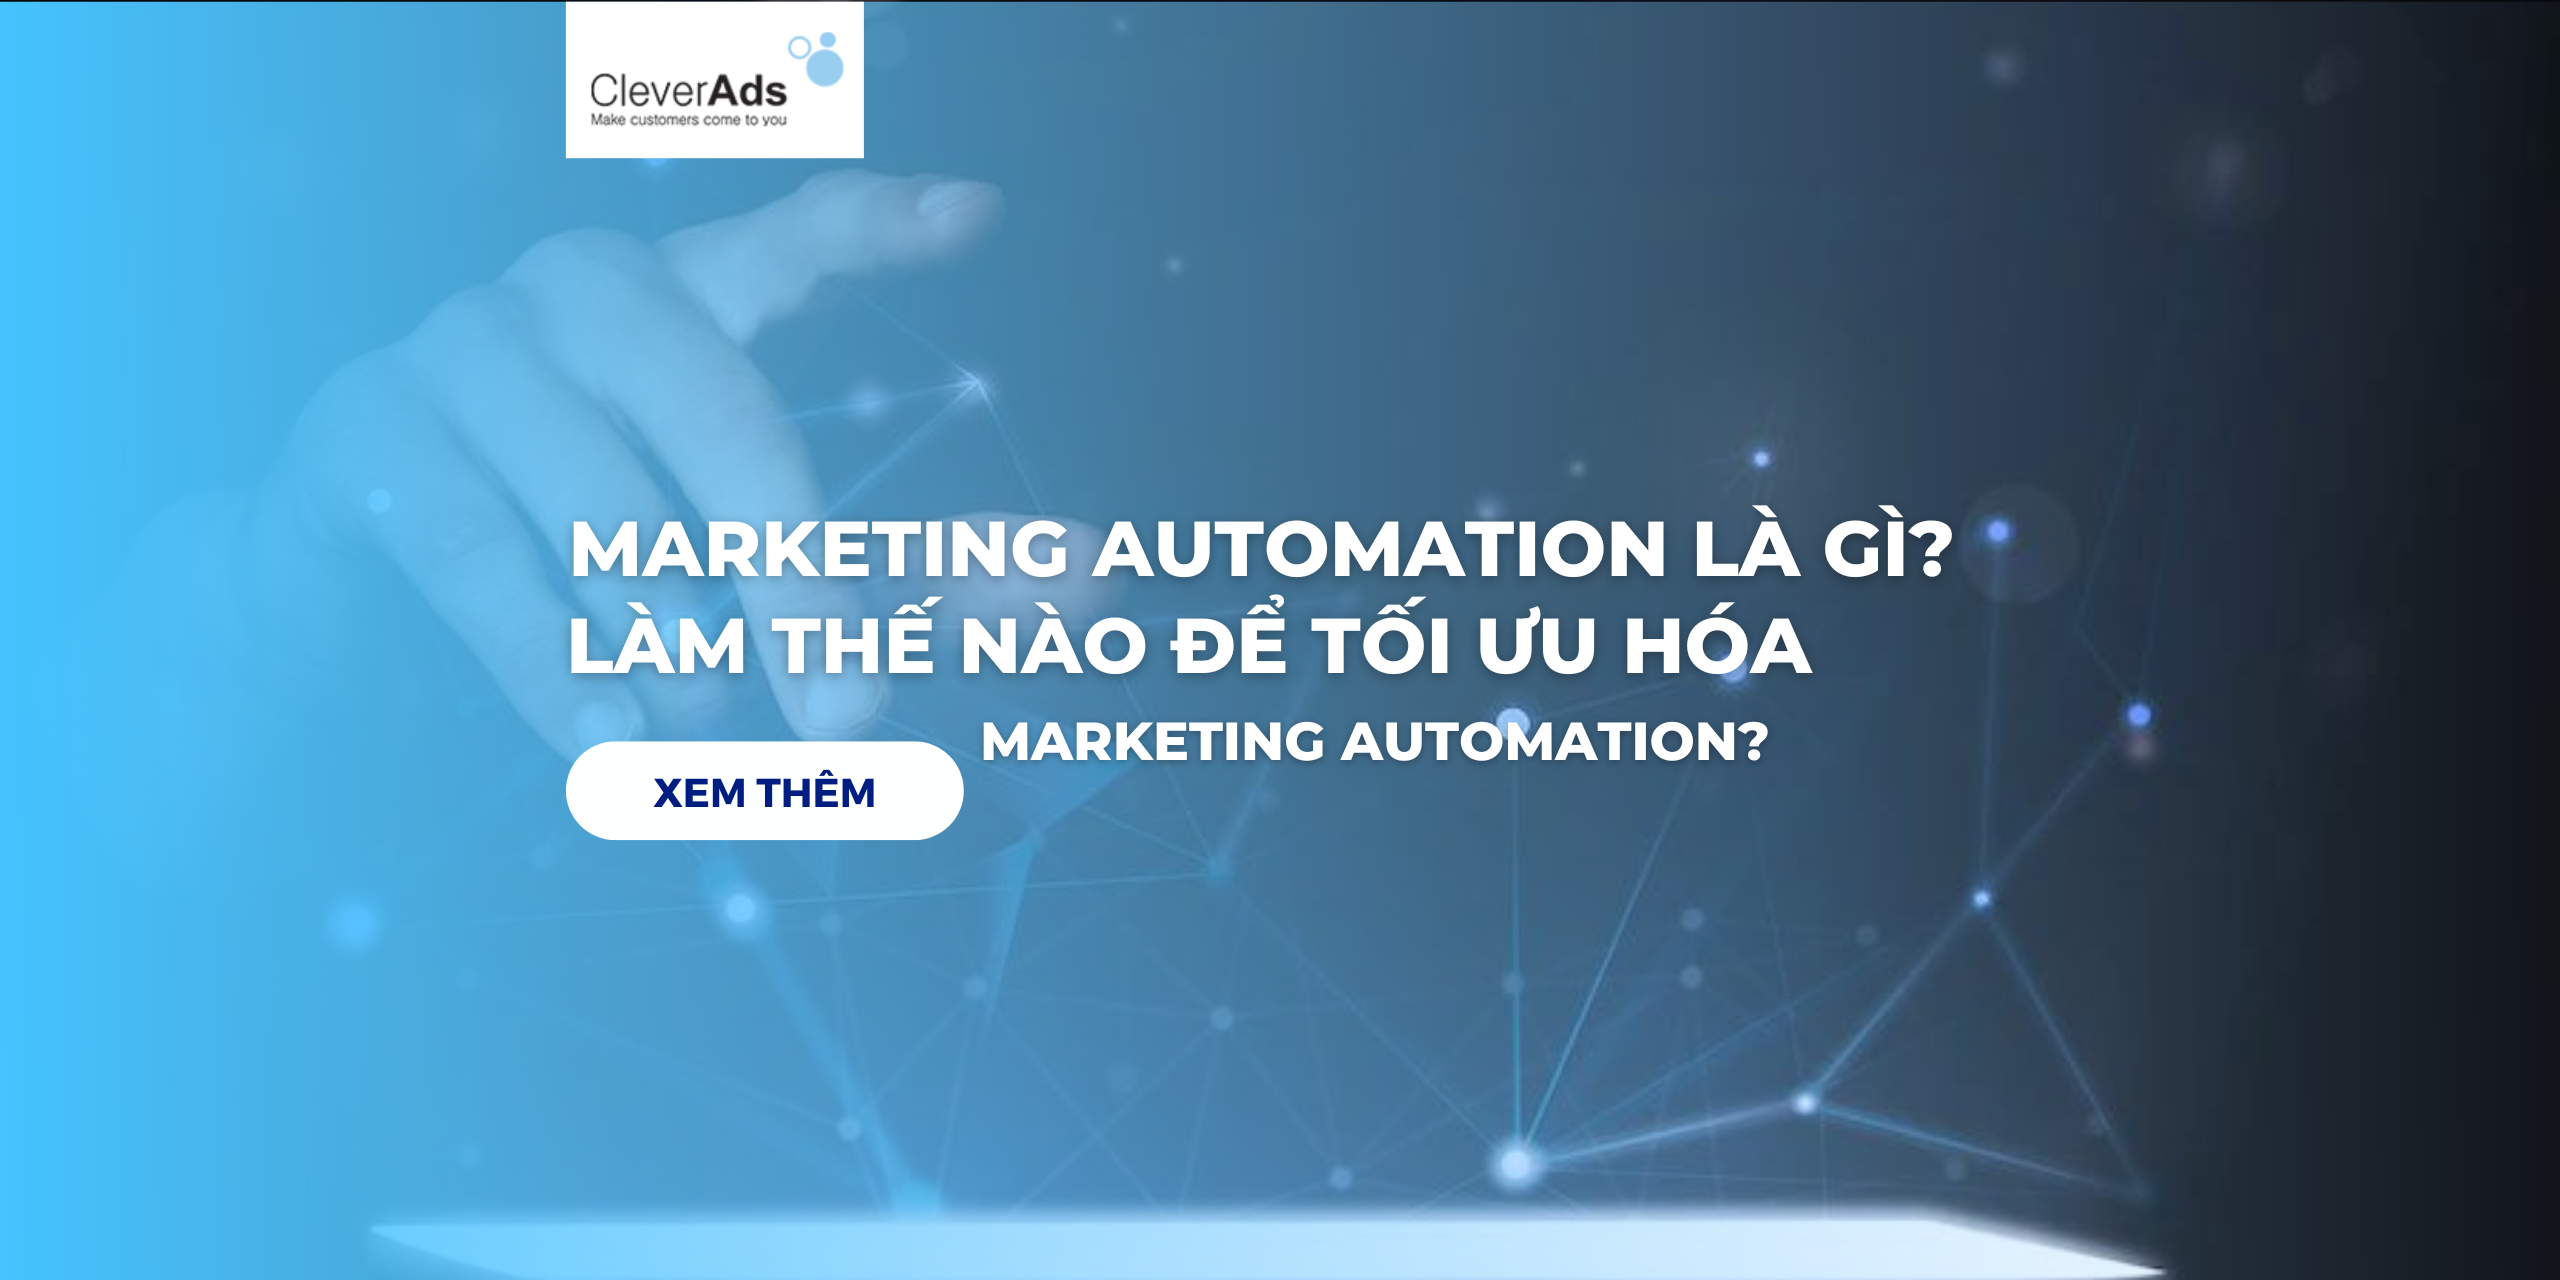 Marketing automation là gì? Làm thế nào để tối ưu hóa công cụ marketing automation?